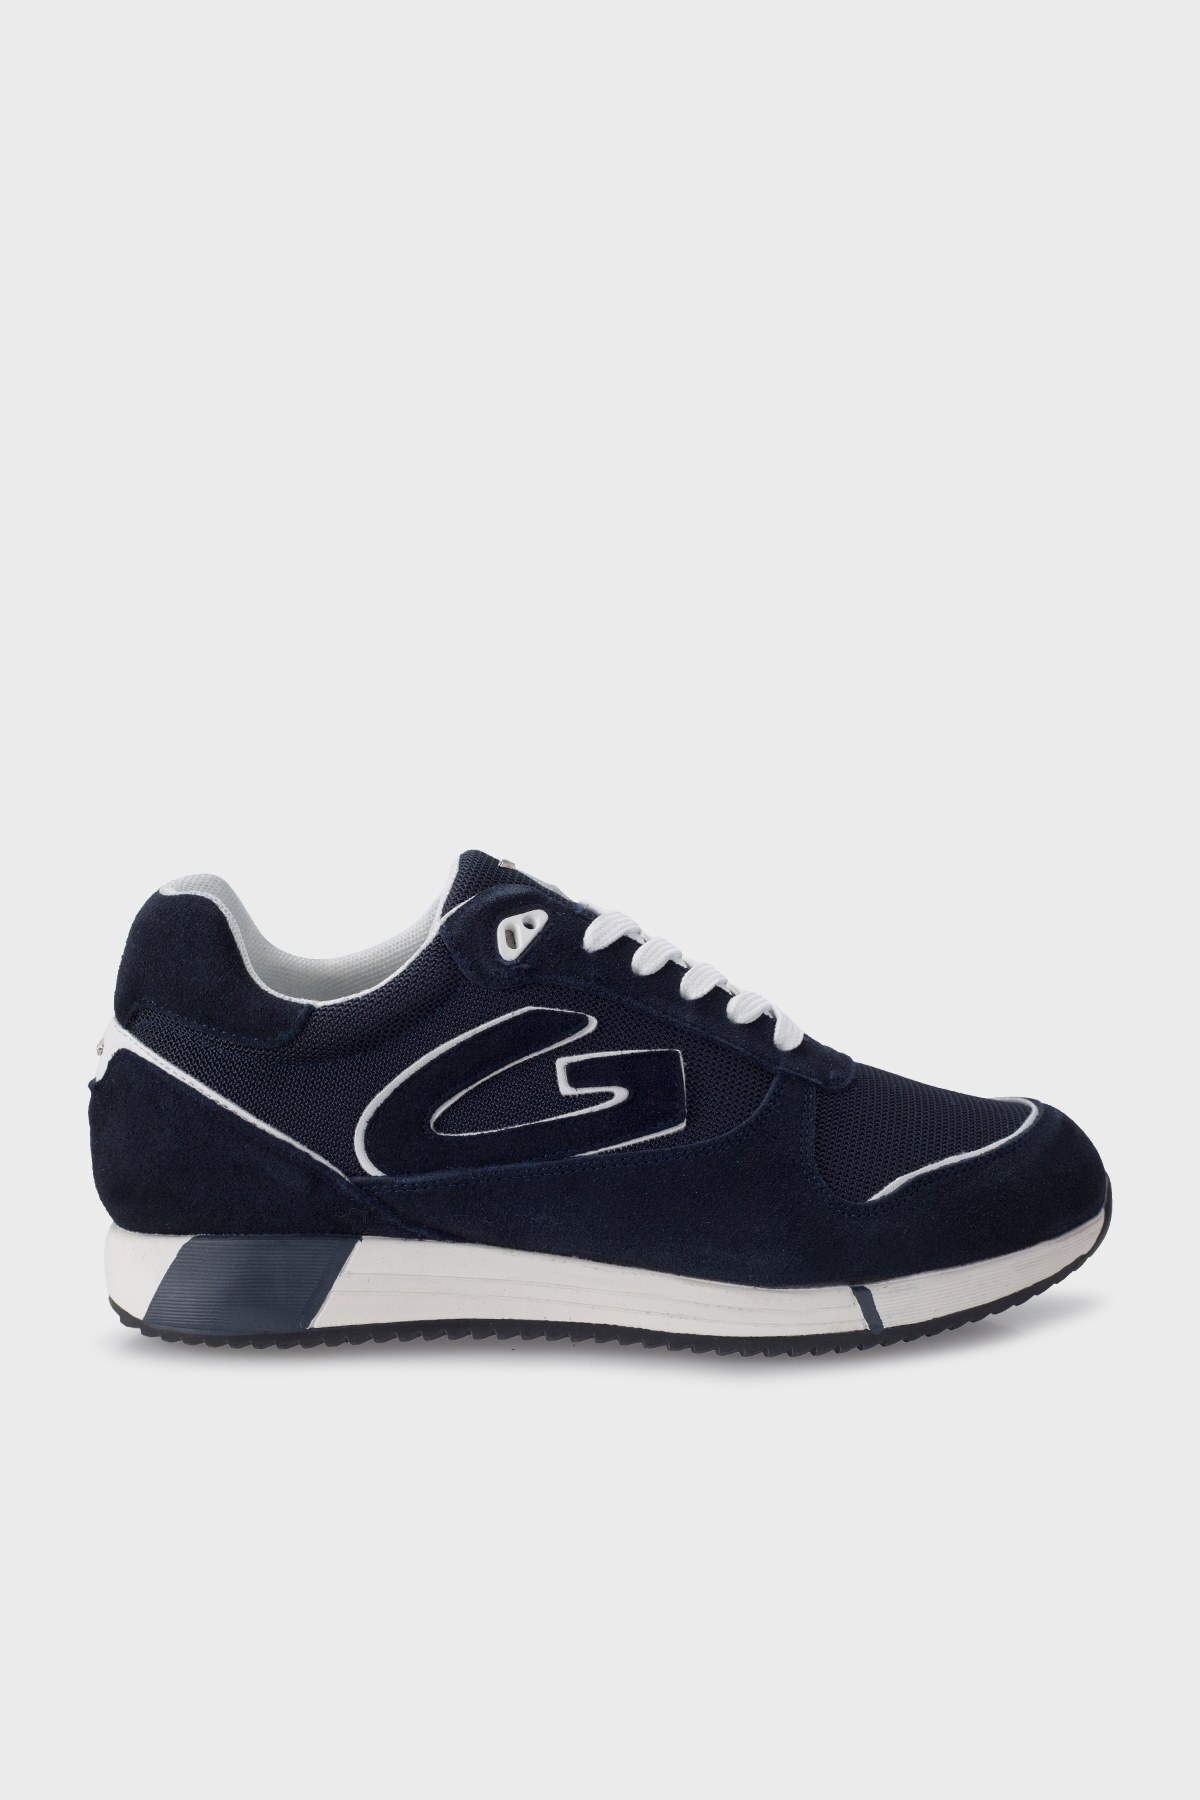 Alberto Guardiani Süet Sneaker Erkek Ayakkabı AGM003539 LACİVERT